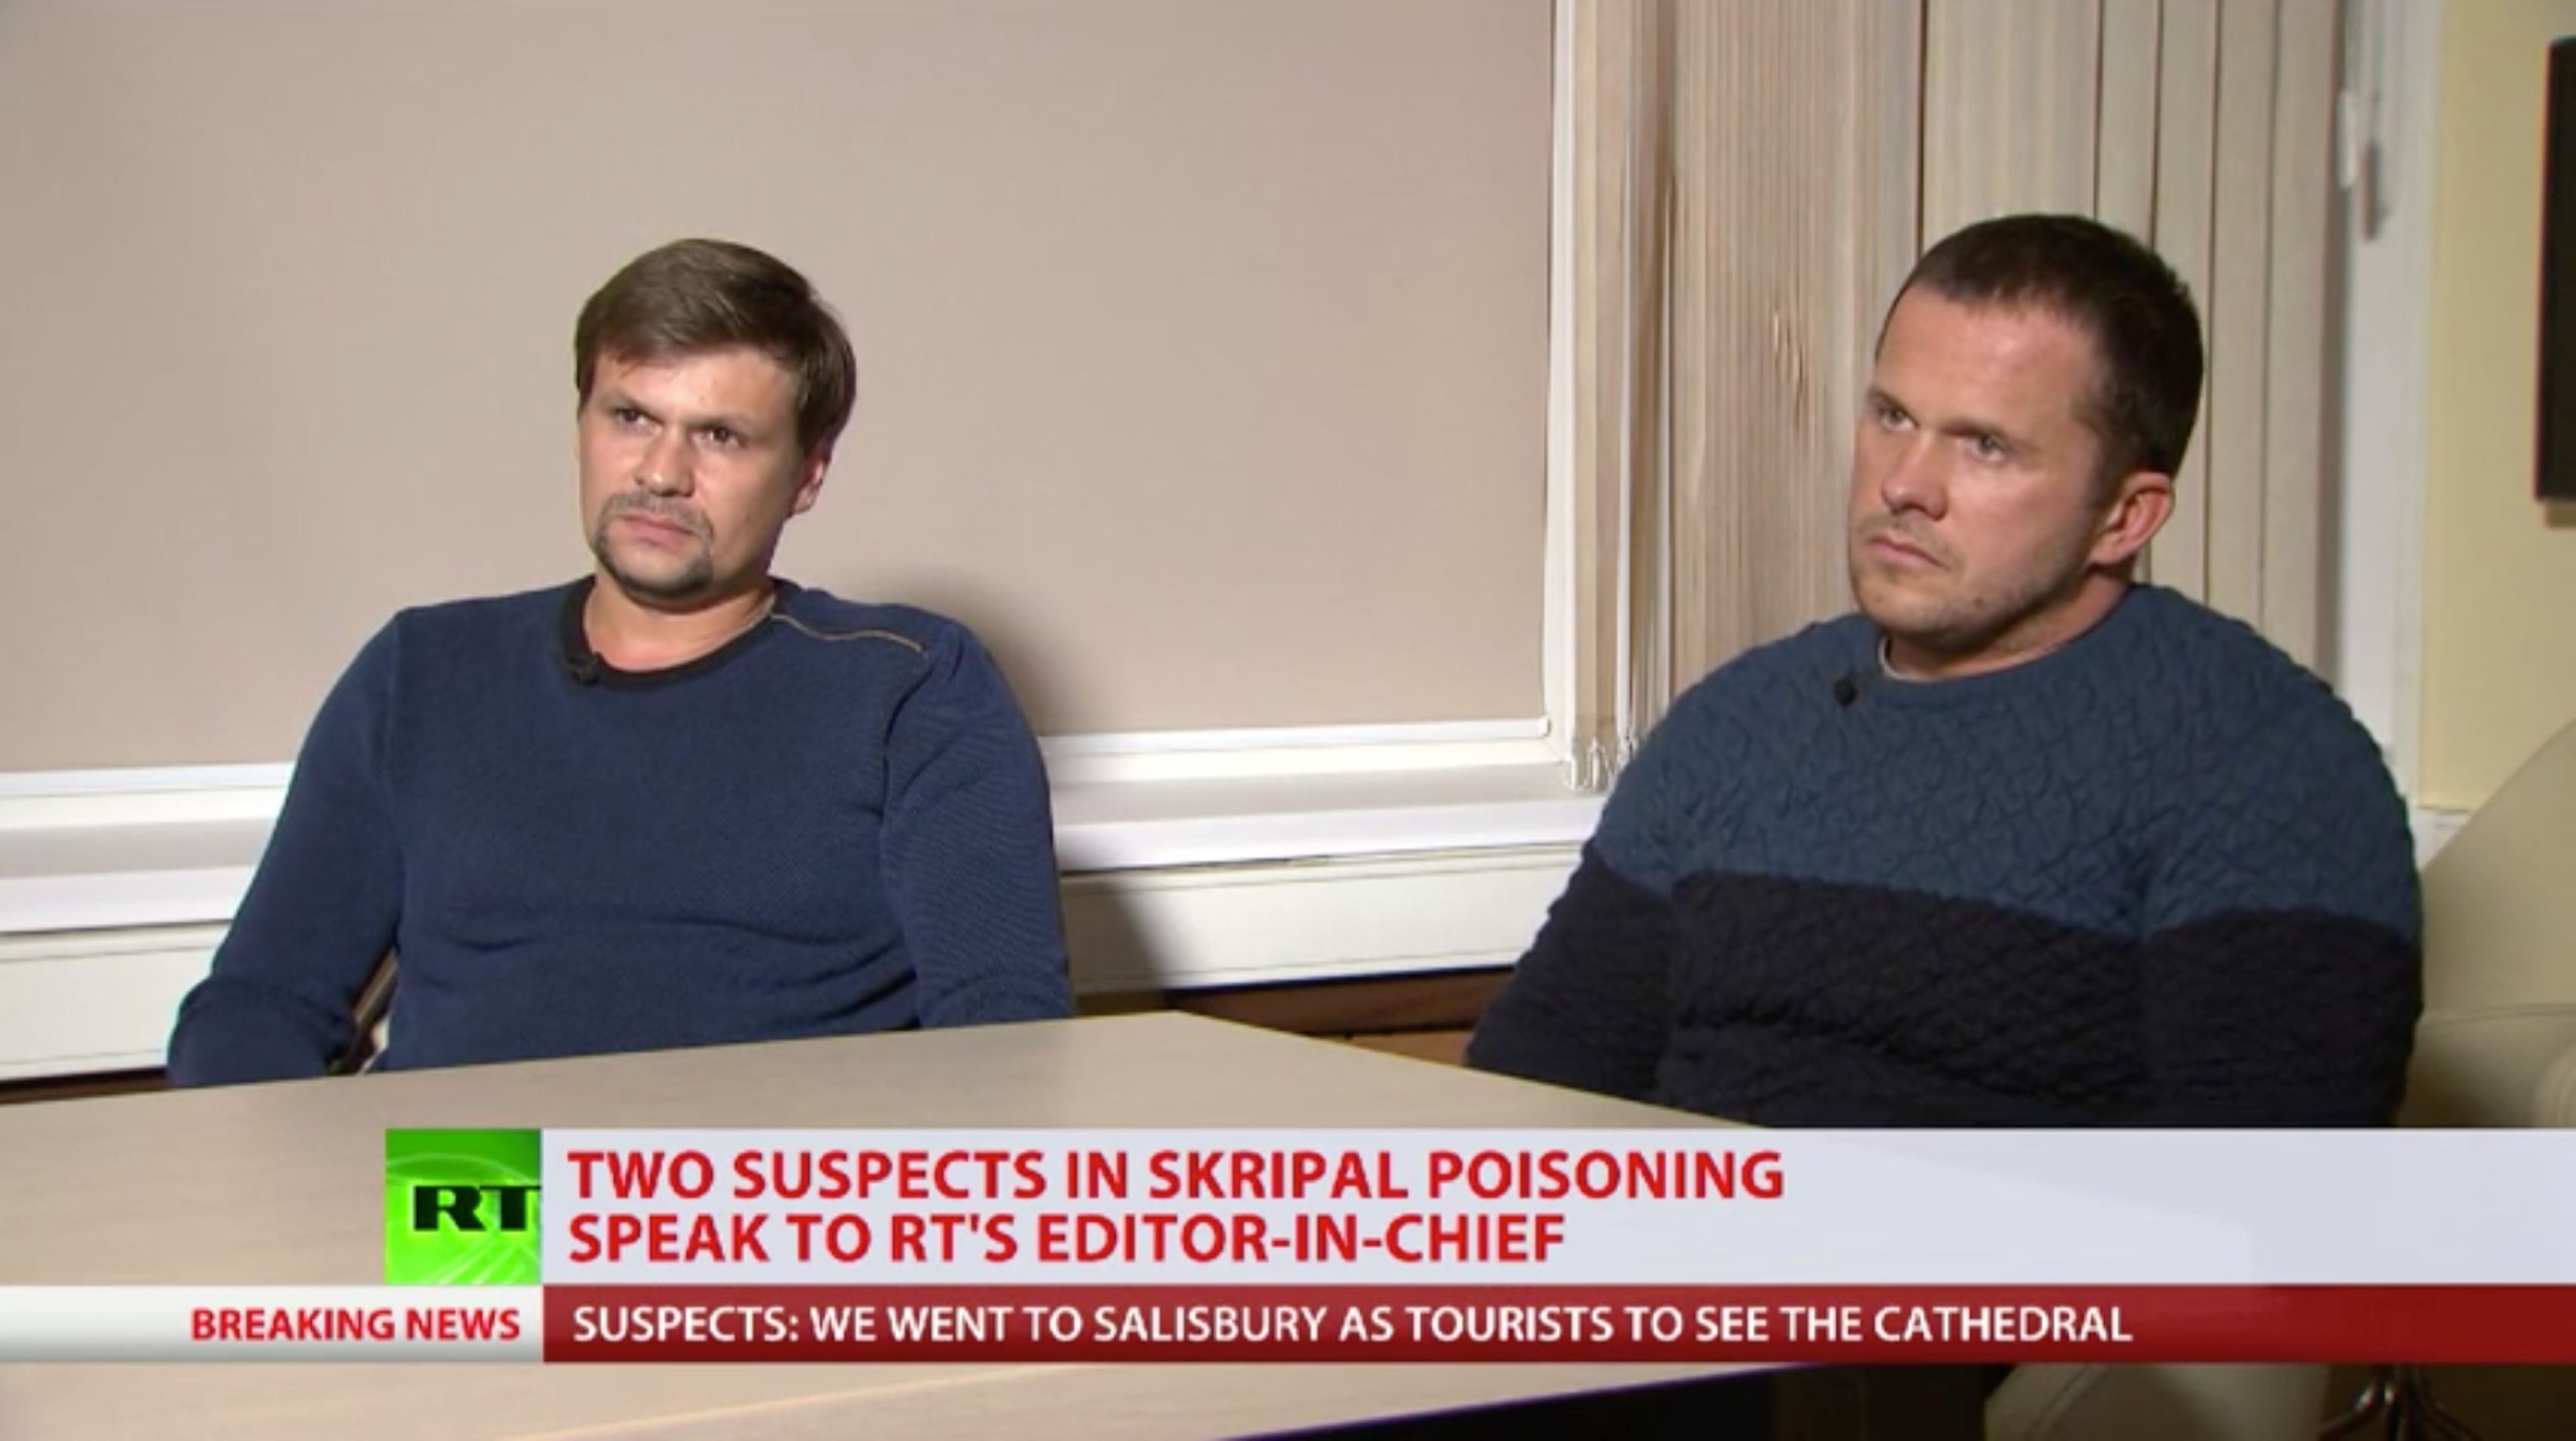 Alexander Petrov y Ruslan Boshirov aseguraron al redactor jefe de RT que no tuvieron nada que ver con el envenenamiento de los Skripal. 